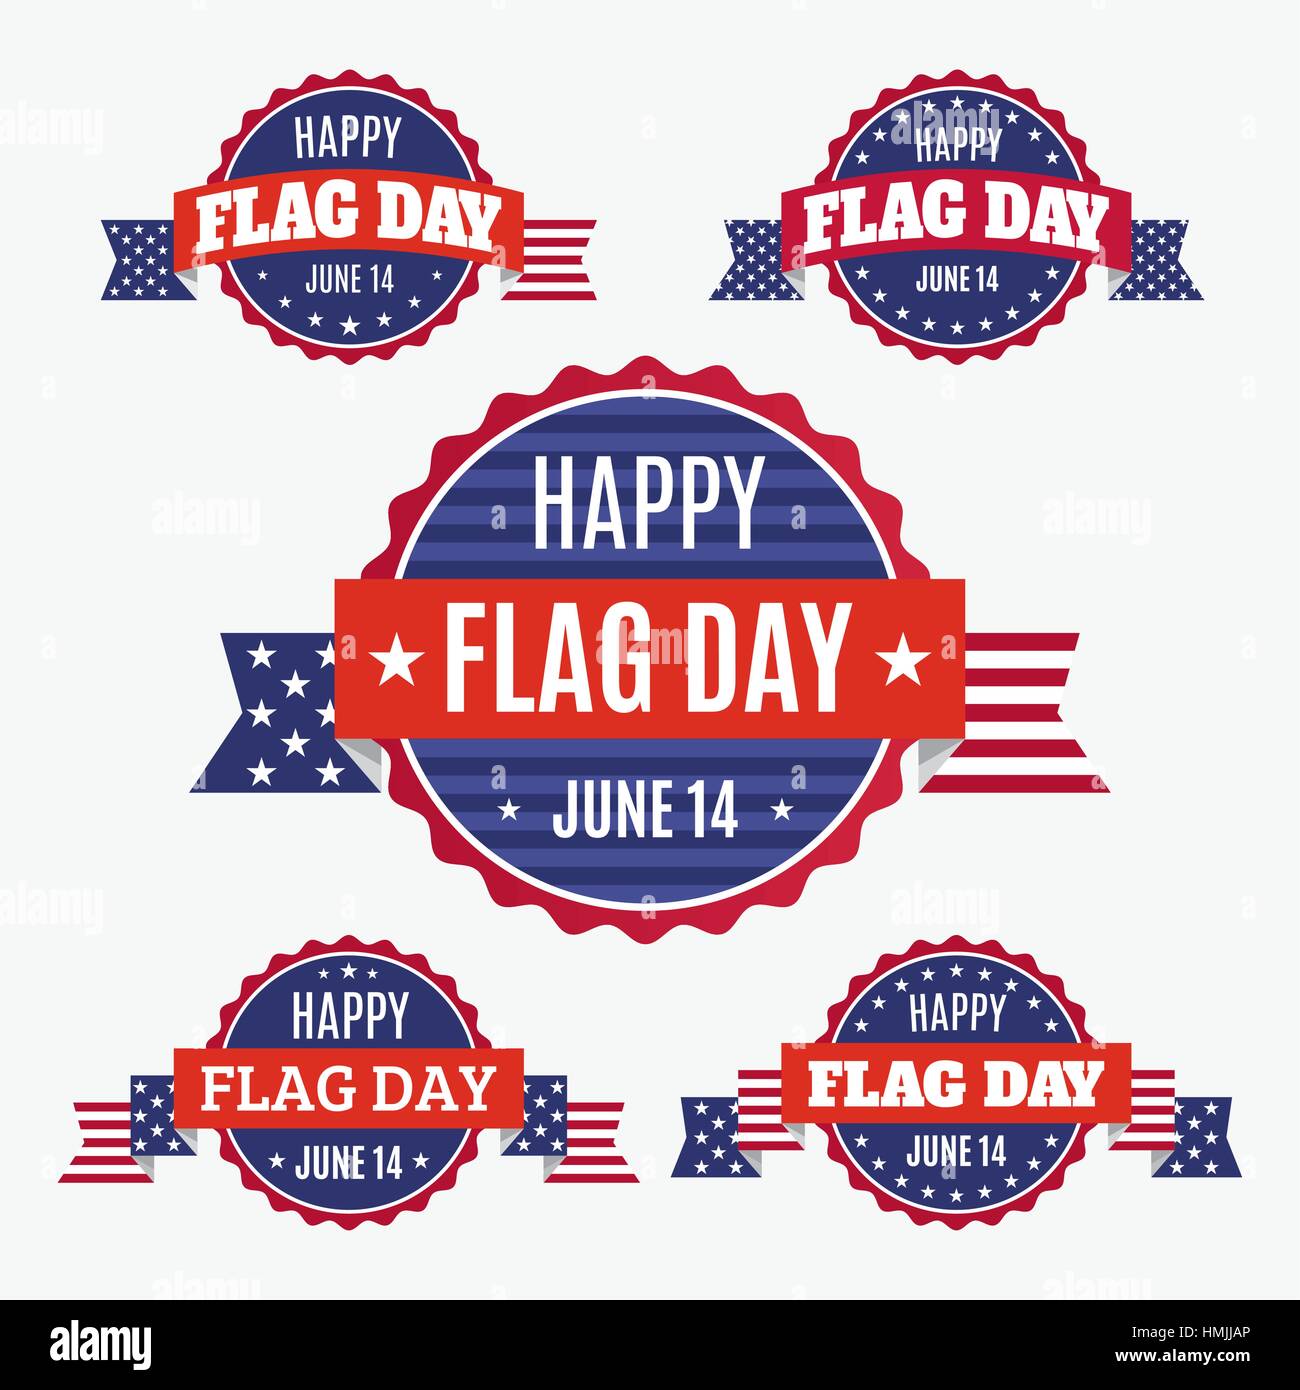 USA-Flaggen-Tag-Abzeichen, Banner und Bänder auf hellem Hintergrund isoliert. Happy Flag Day Juni 14 Zitat. Amerikanische Flagge und Set von Designelementen. Stock Vektor